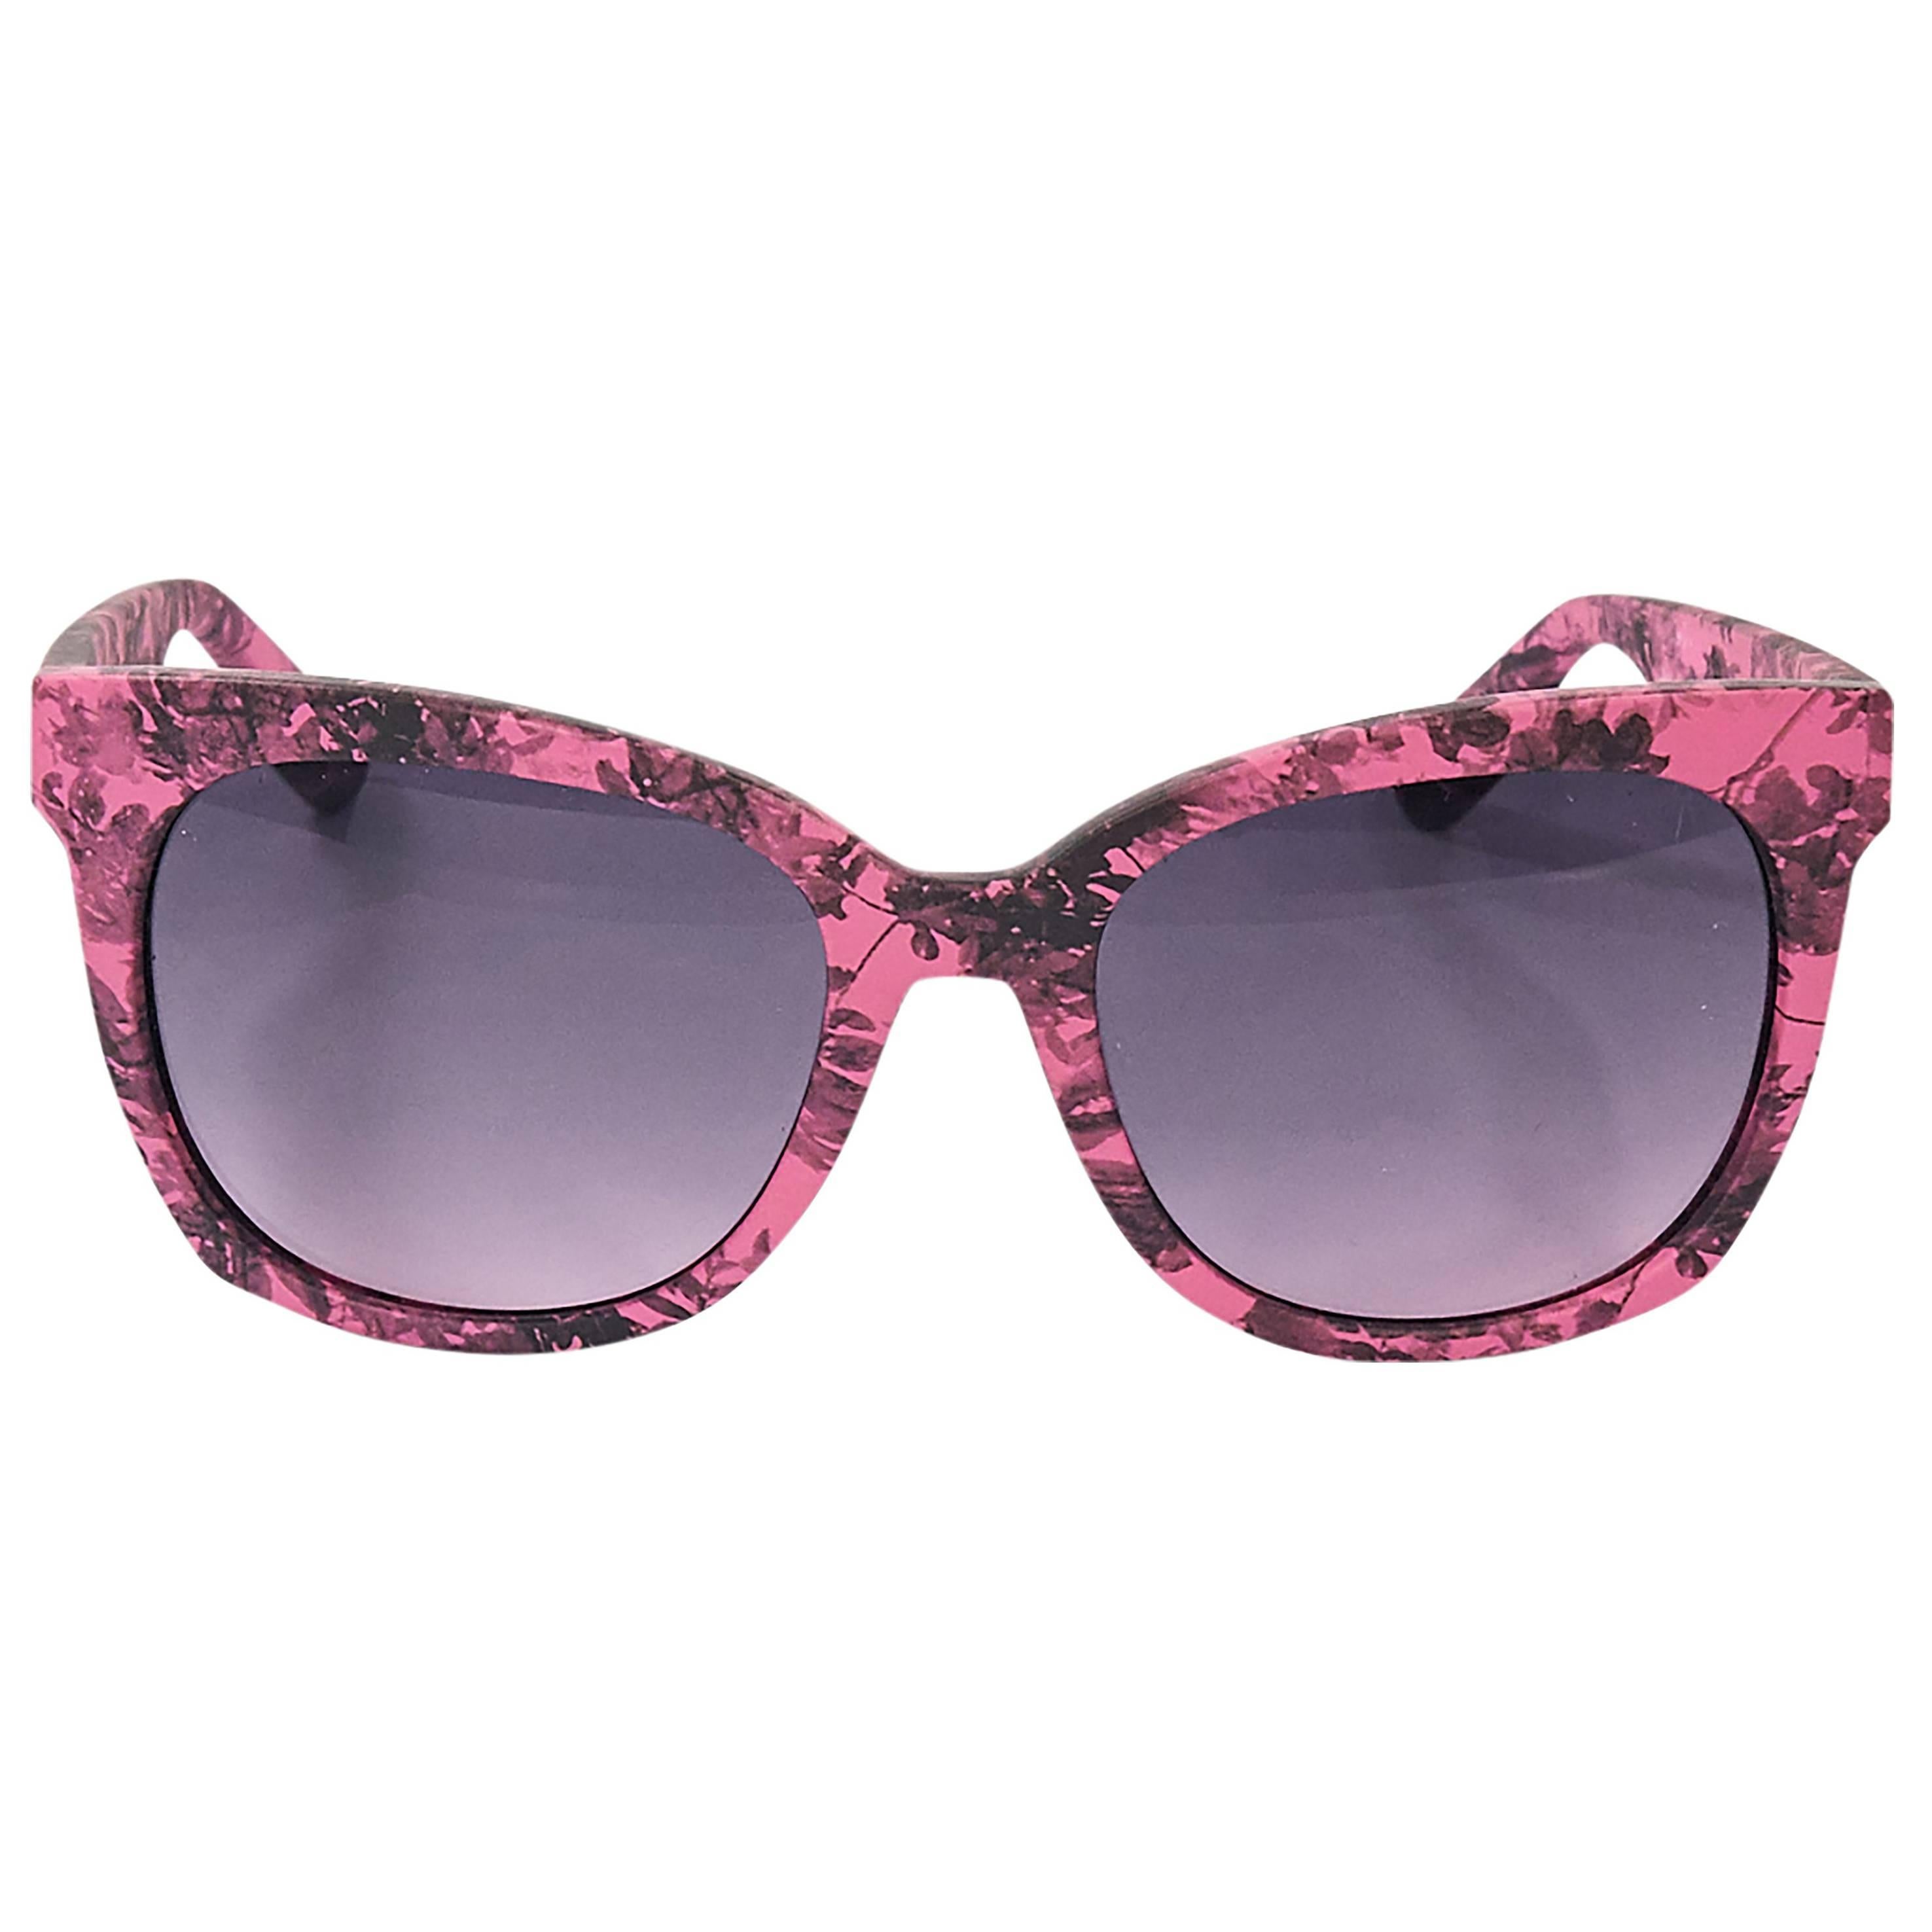 Pink & Black Alexander McQueen Sunglasses